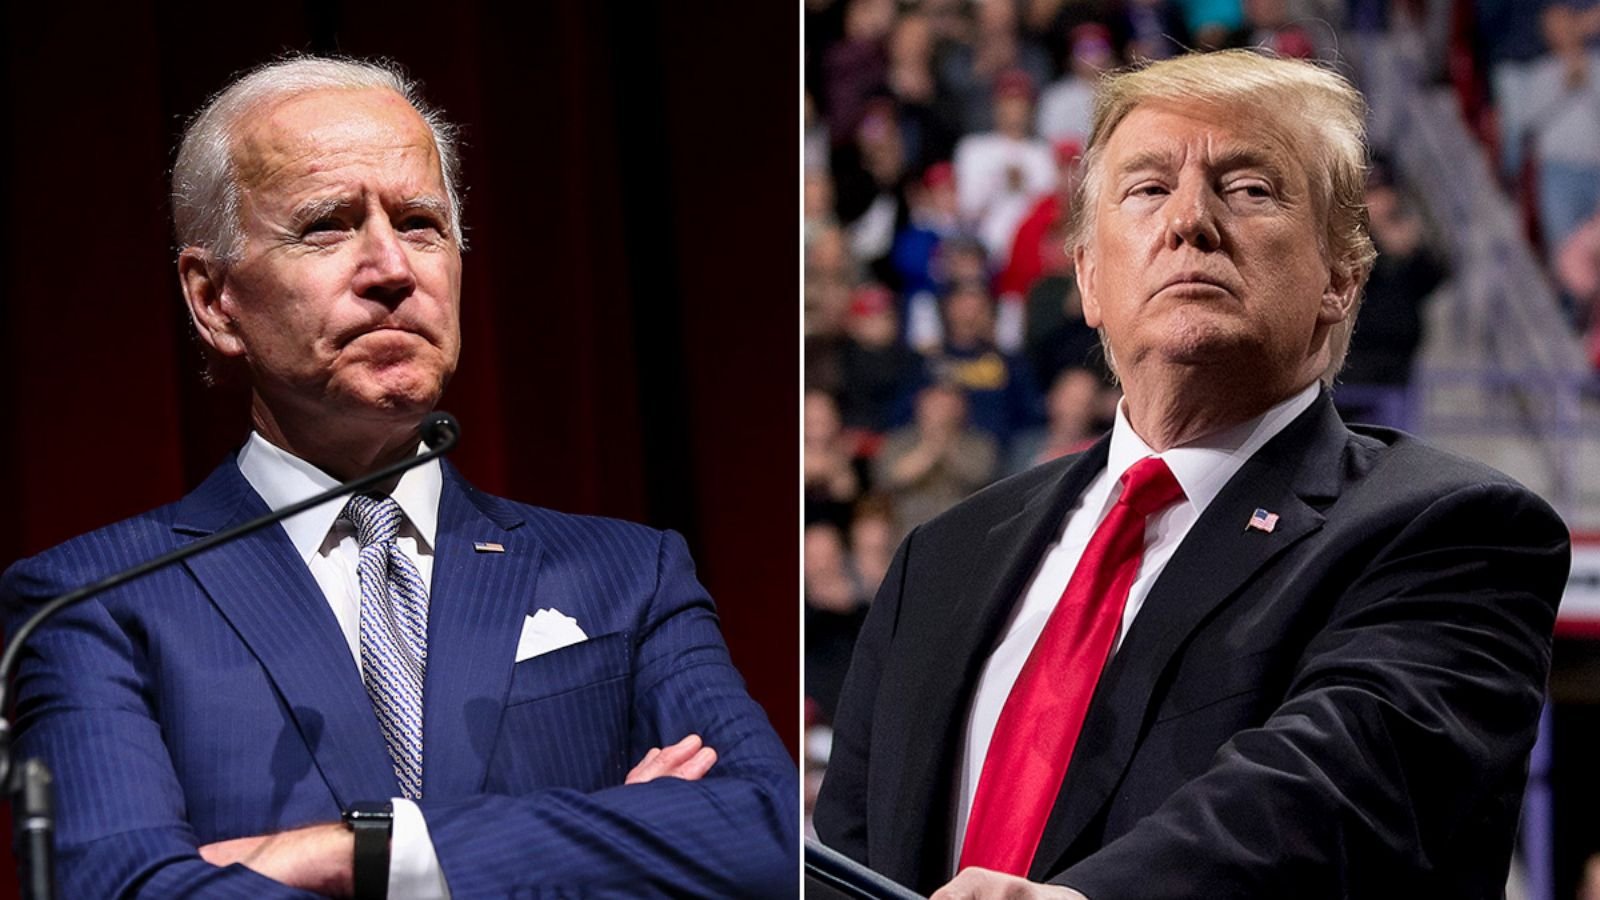  Prima dezbatere televizată Trump-Biden: Eşti un clovn; Nu e nimic inteligent la tine, Joe!